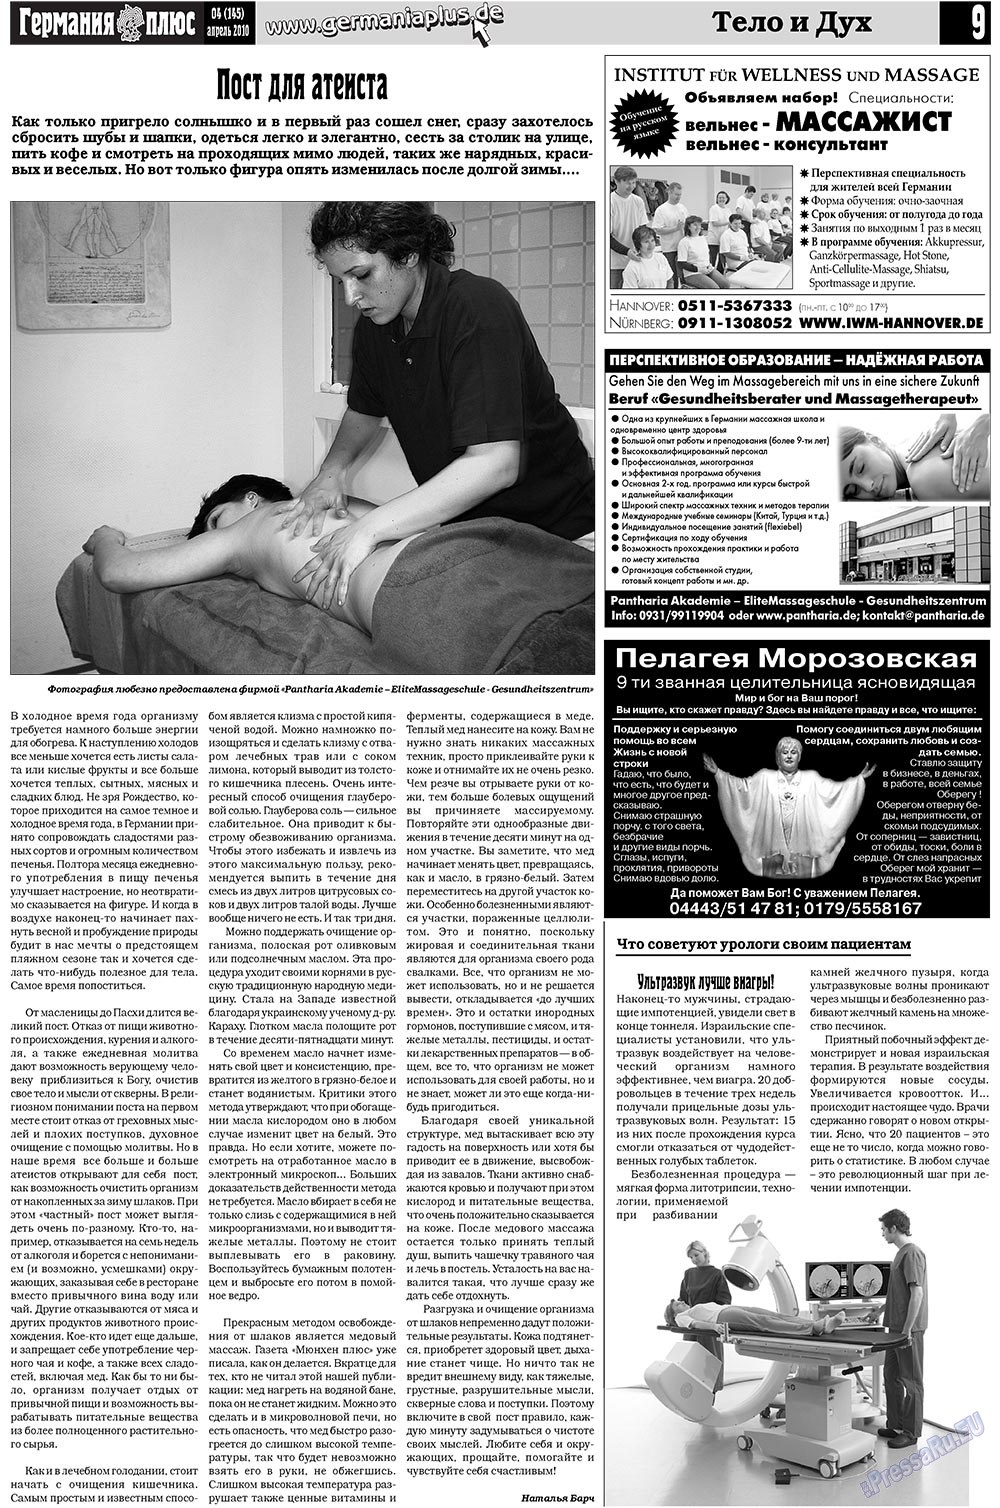 Германия плюс, газета. 2010 №4 стр.9